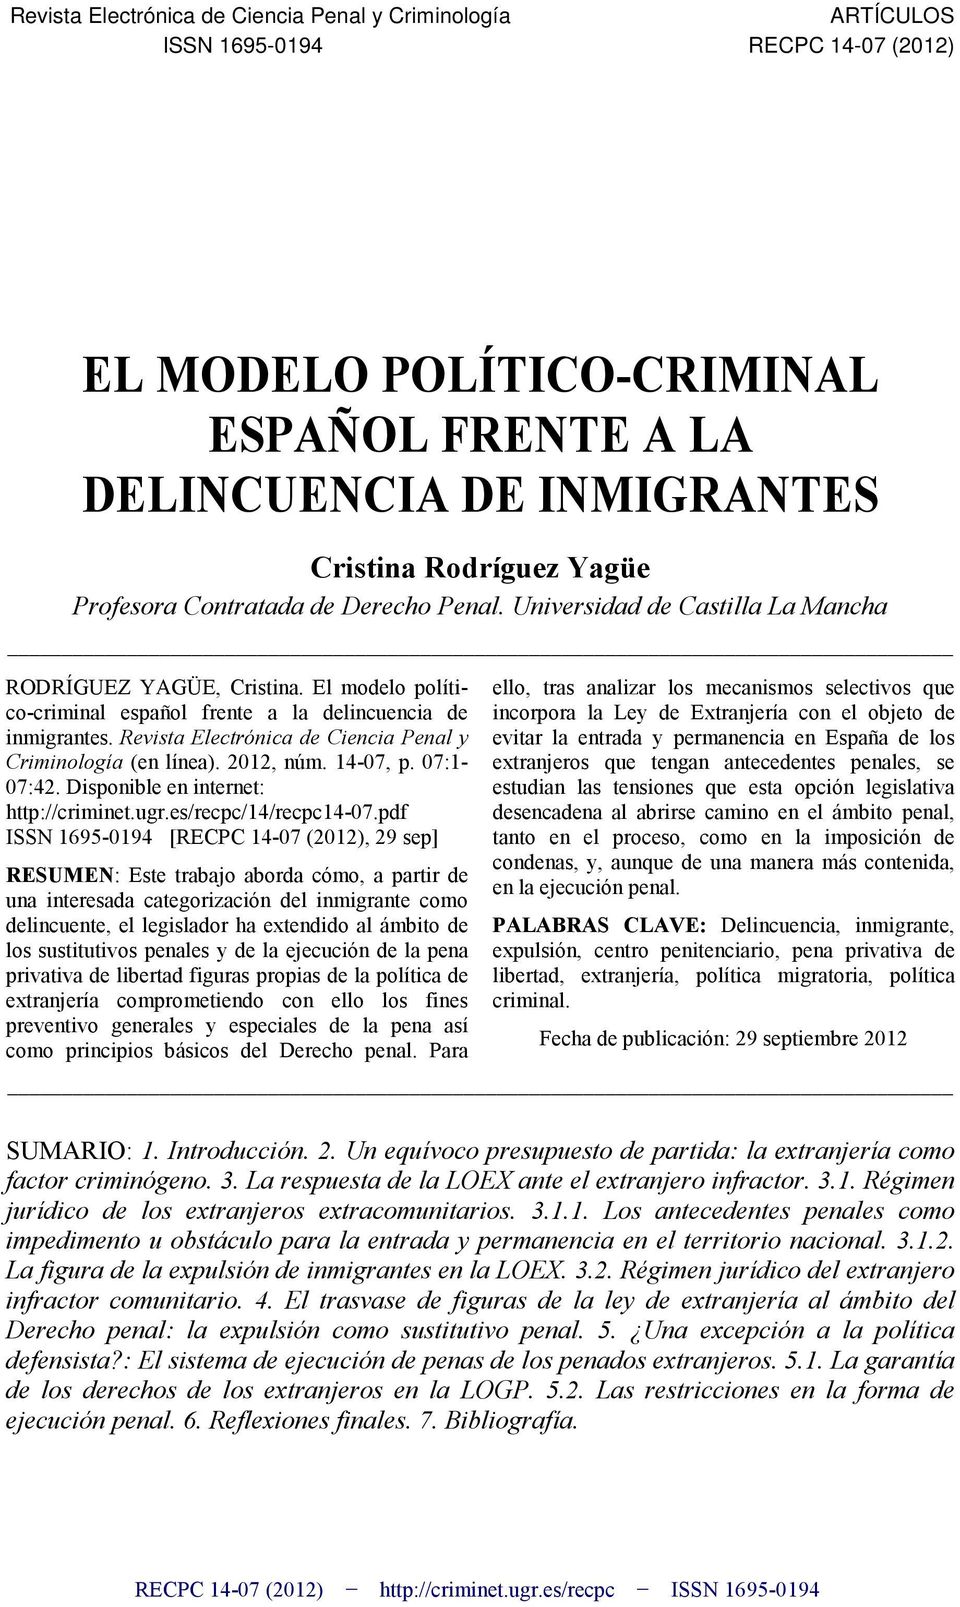 Revista Electrónica de Ciencia Penal y Criminología (en línea). 2012, núm. 14-07, p. 07:1-07:42. Disponible en internet: http://criminet.ugr.es/recpc/14/recpc14-07.